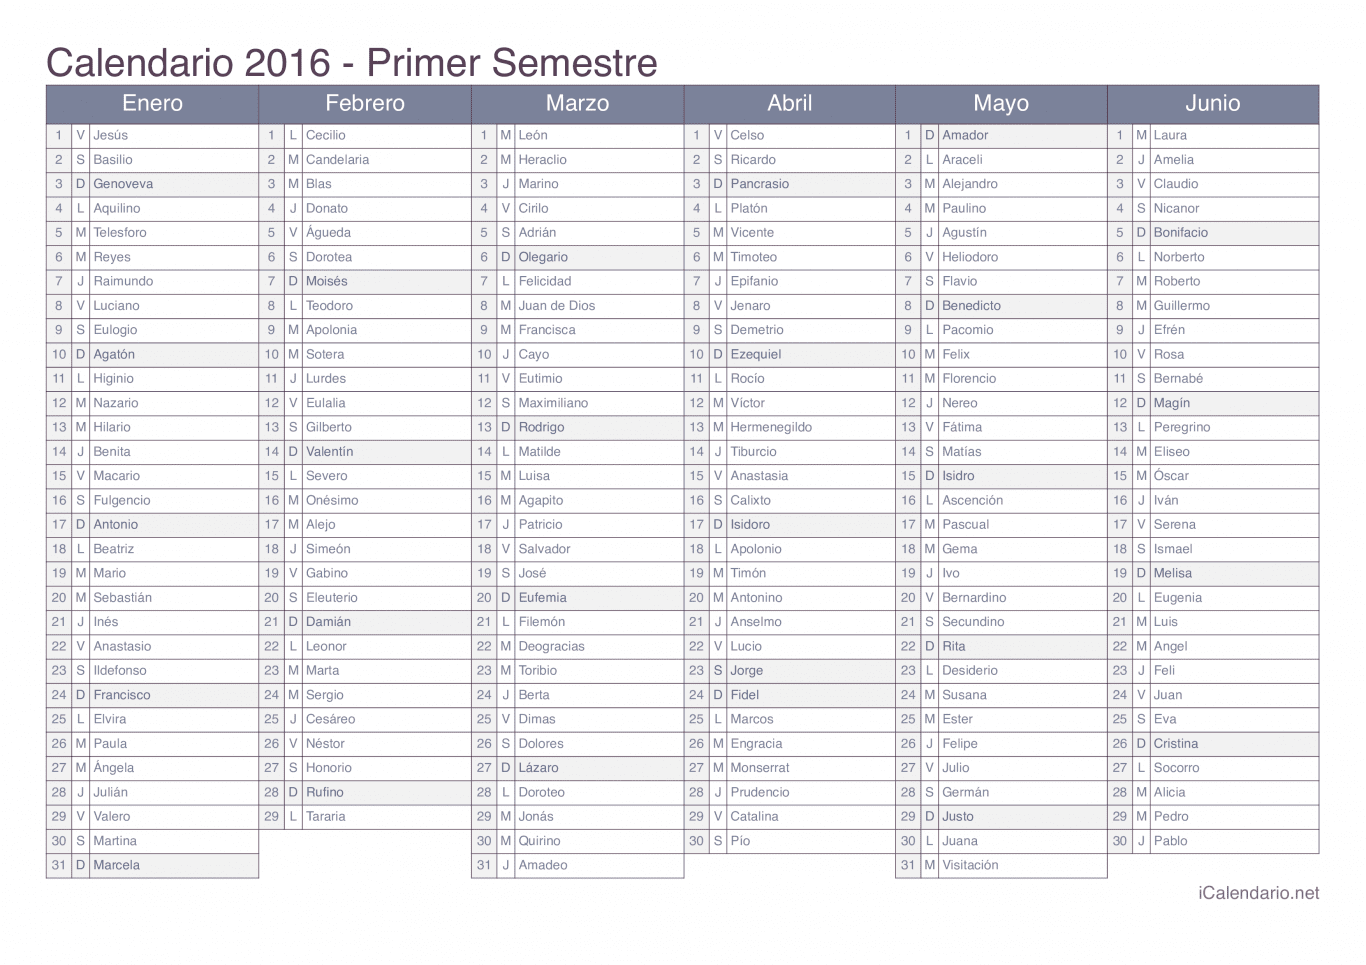 Calendario por semestre 2016 com festa do dia - Office